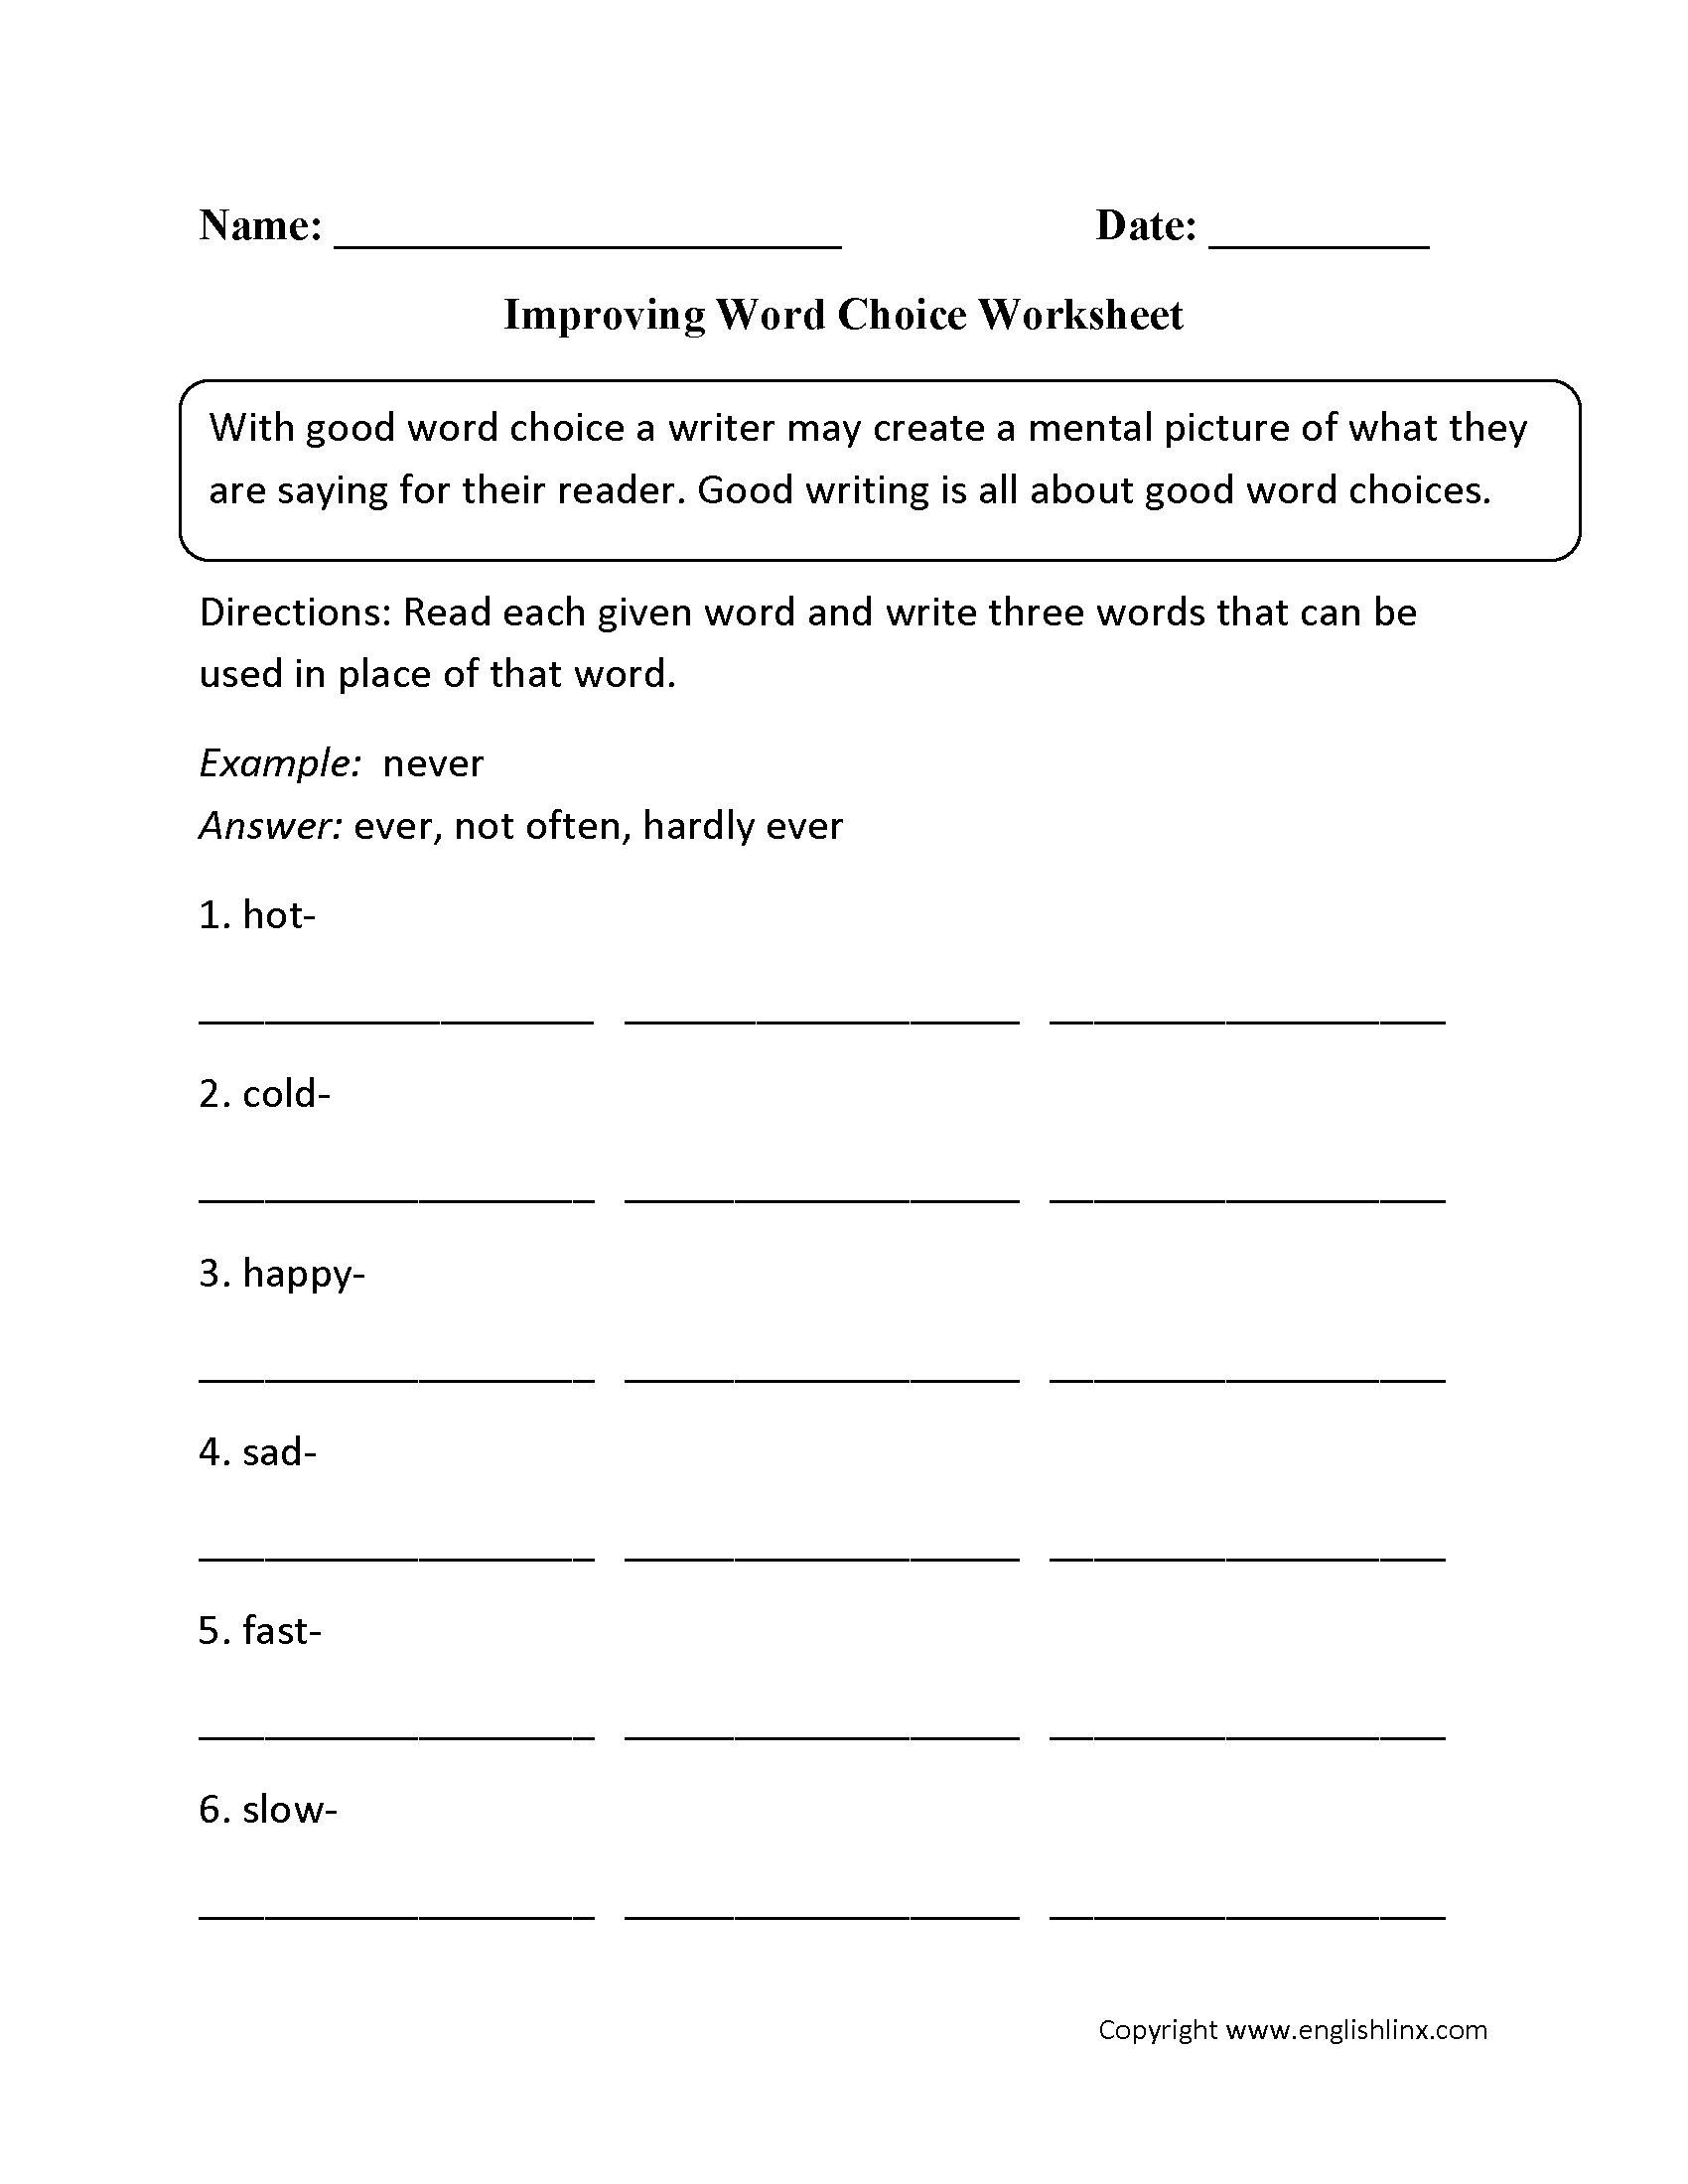 Improving Word Choice Worksheet Grammar Worksheets Word 